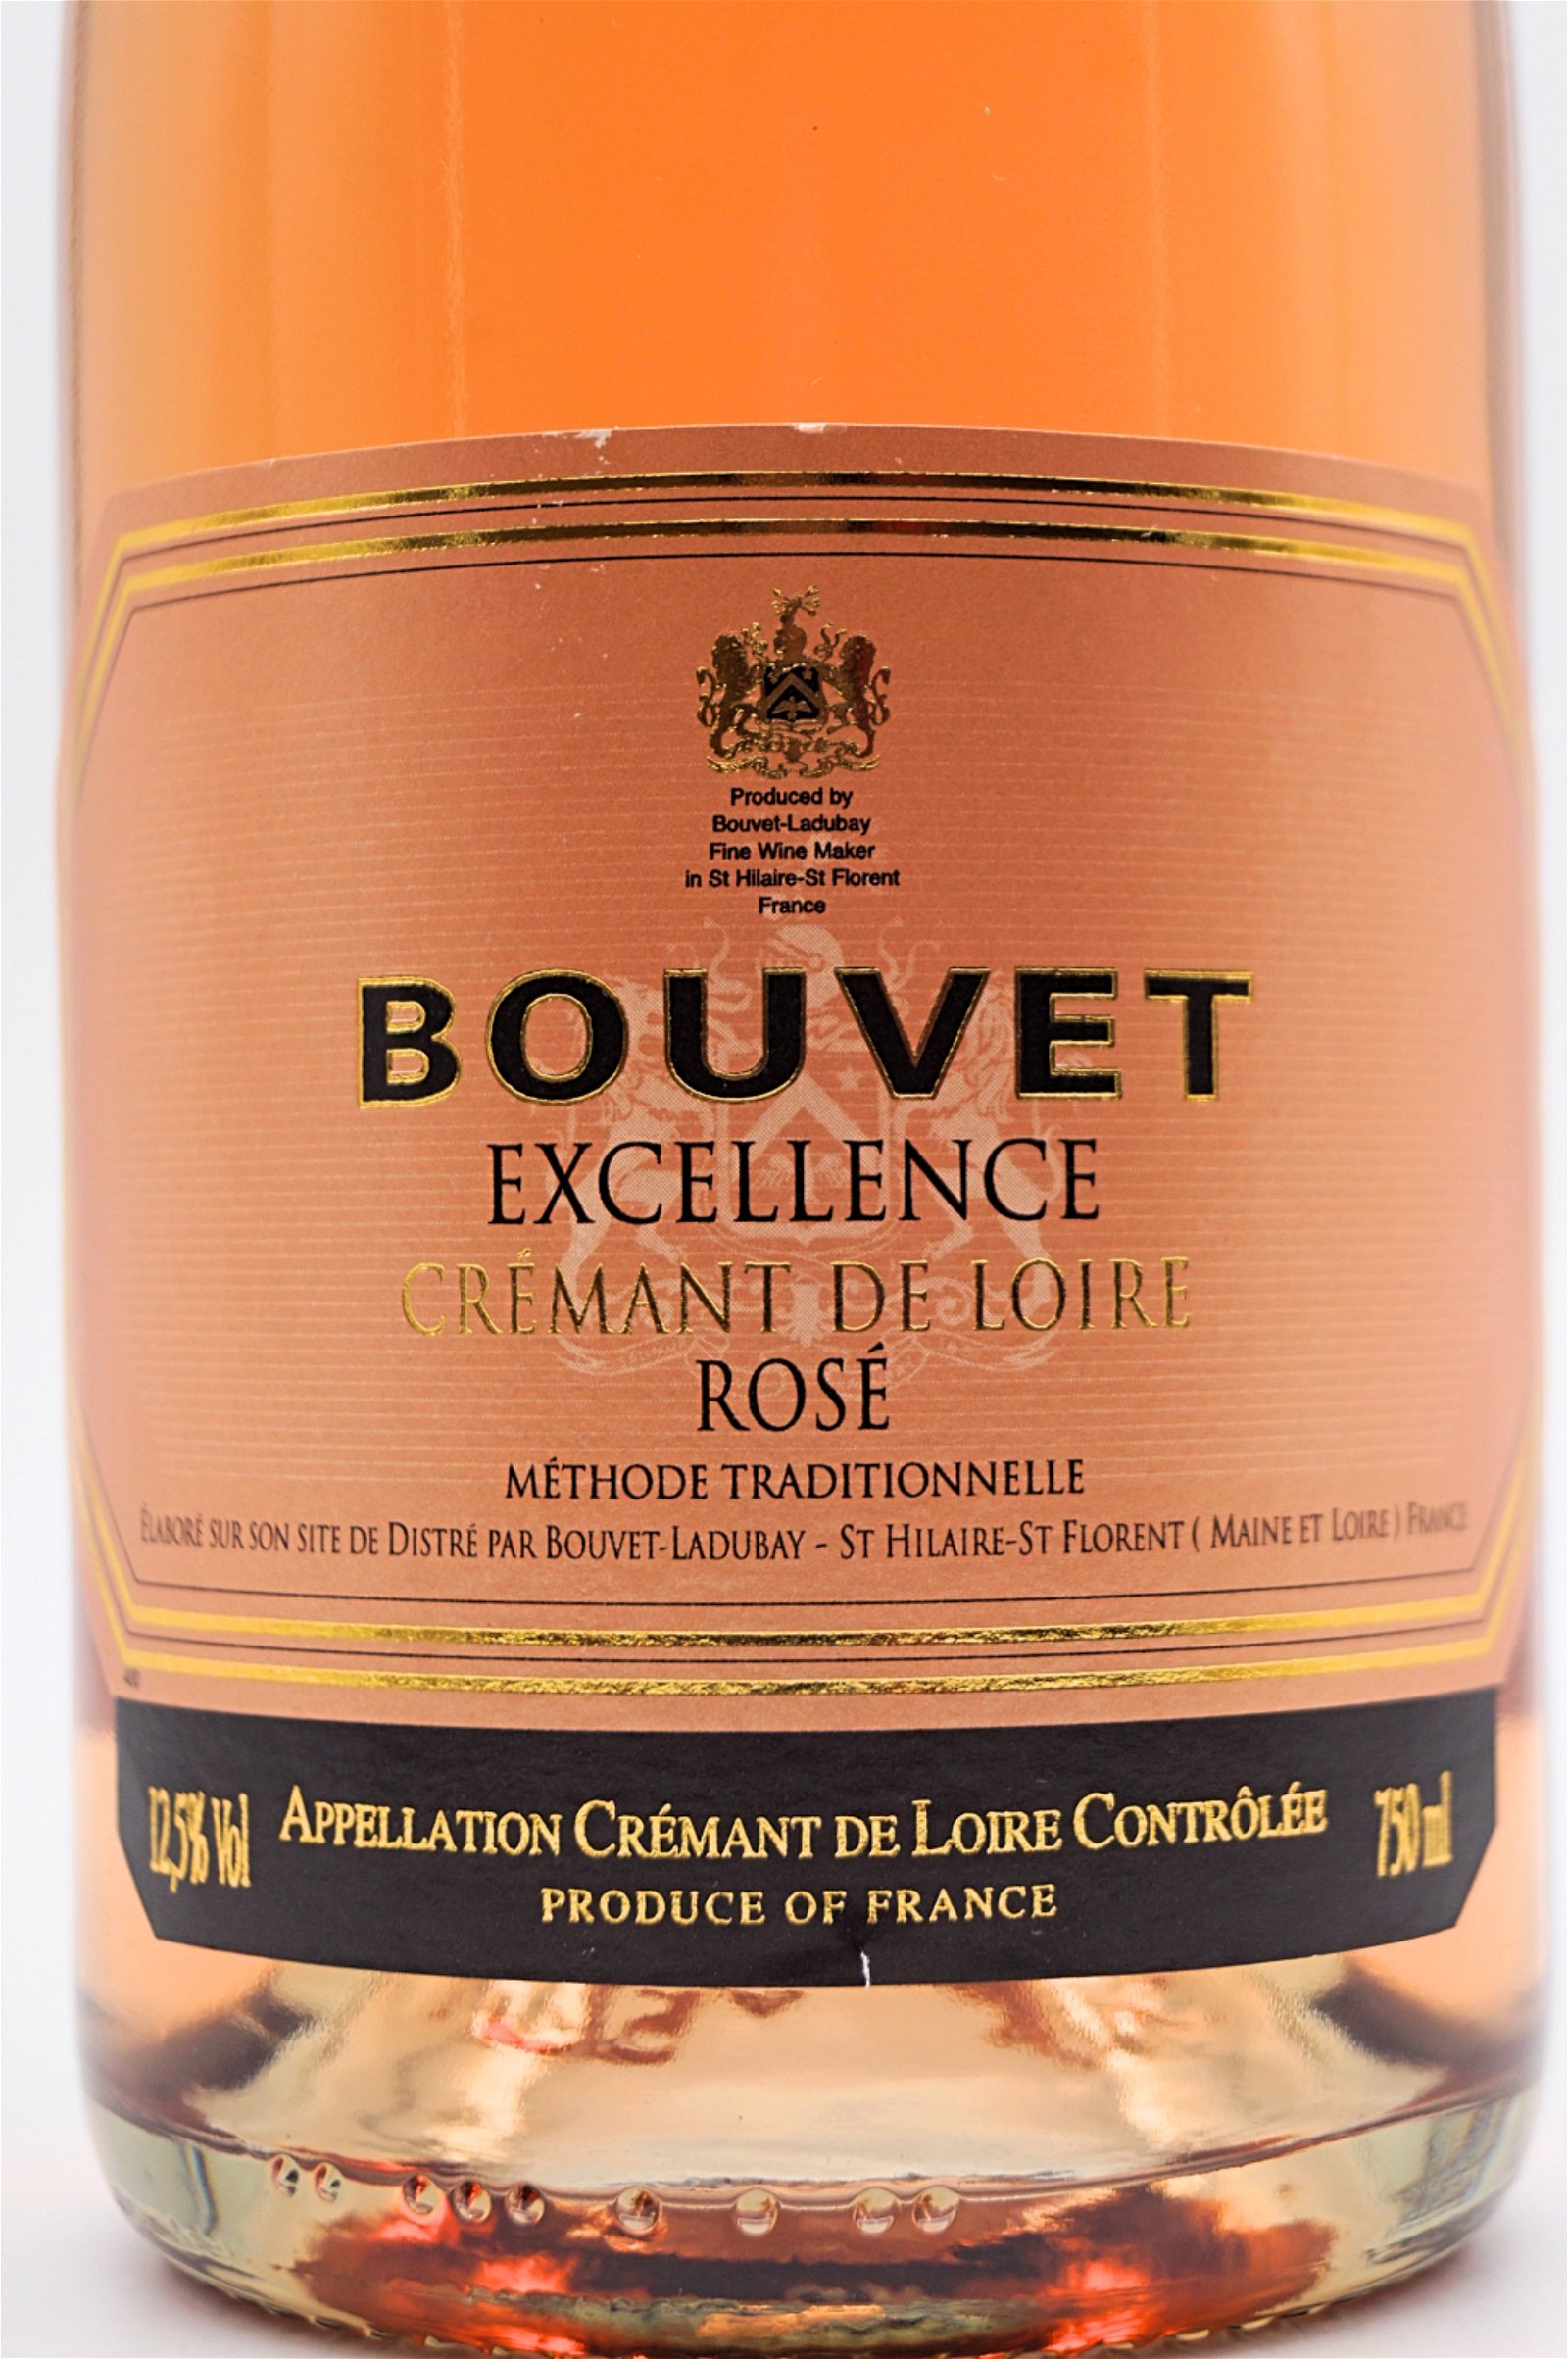 Bouvet Cremant de Loire Brut Rose